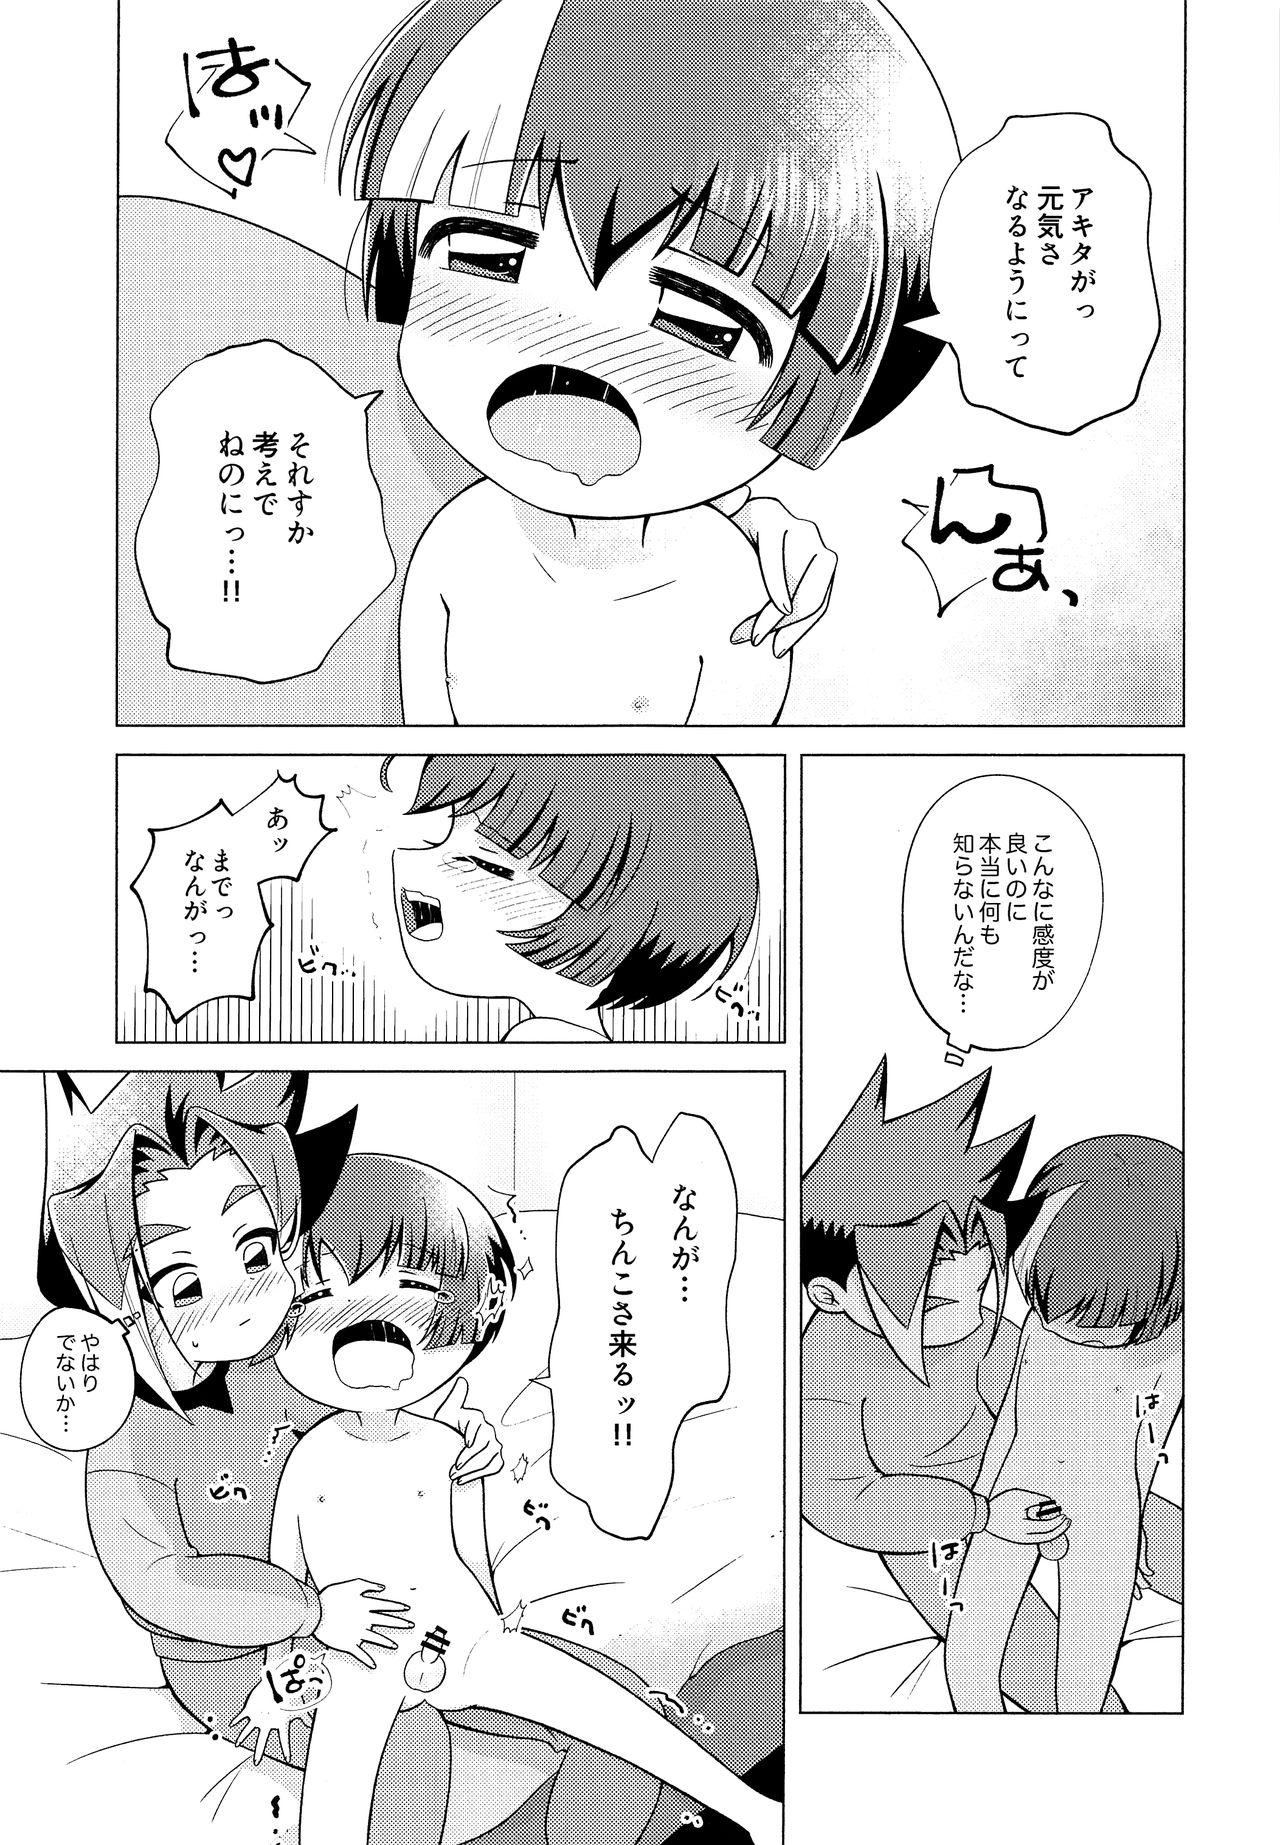 Defloration Ora ga Mama ni Naru - Shinkansen henkei robo shinkalion Boss - Page 12